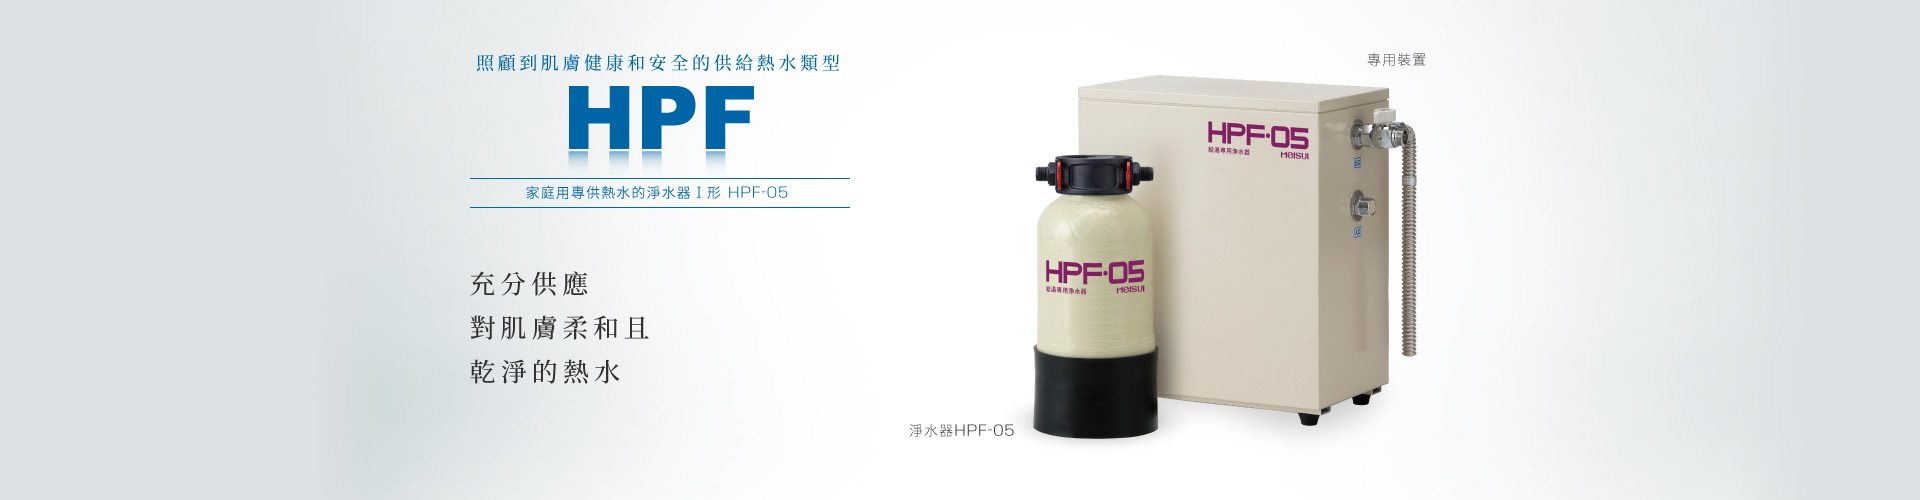 HPF-05 專供熱水的淨水器Ⅰ形